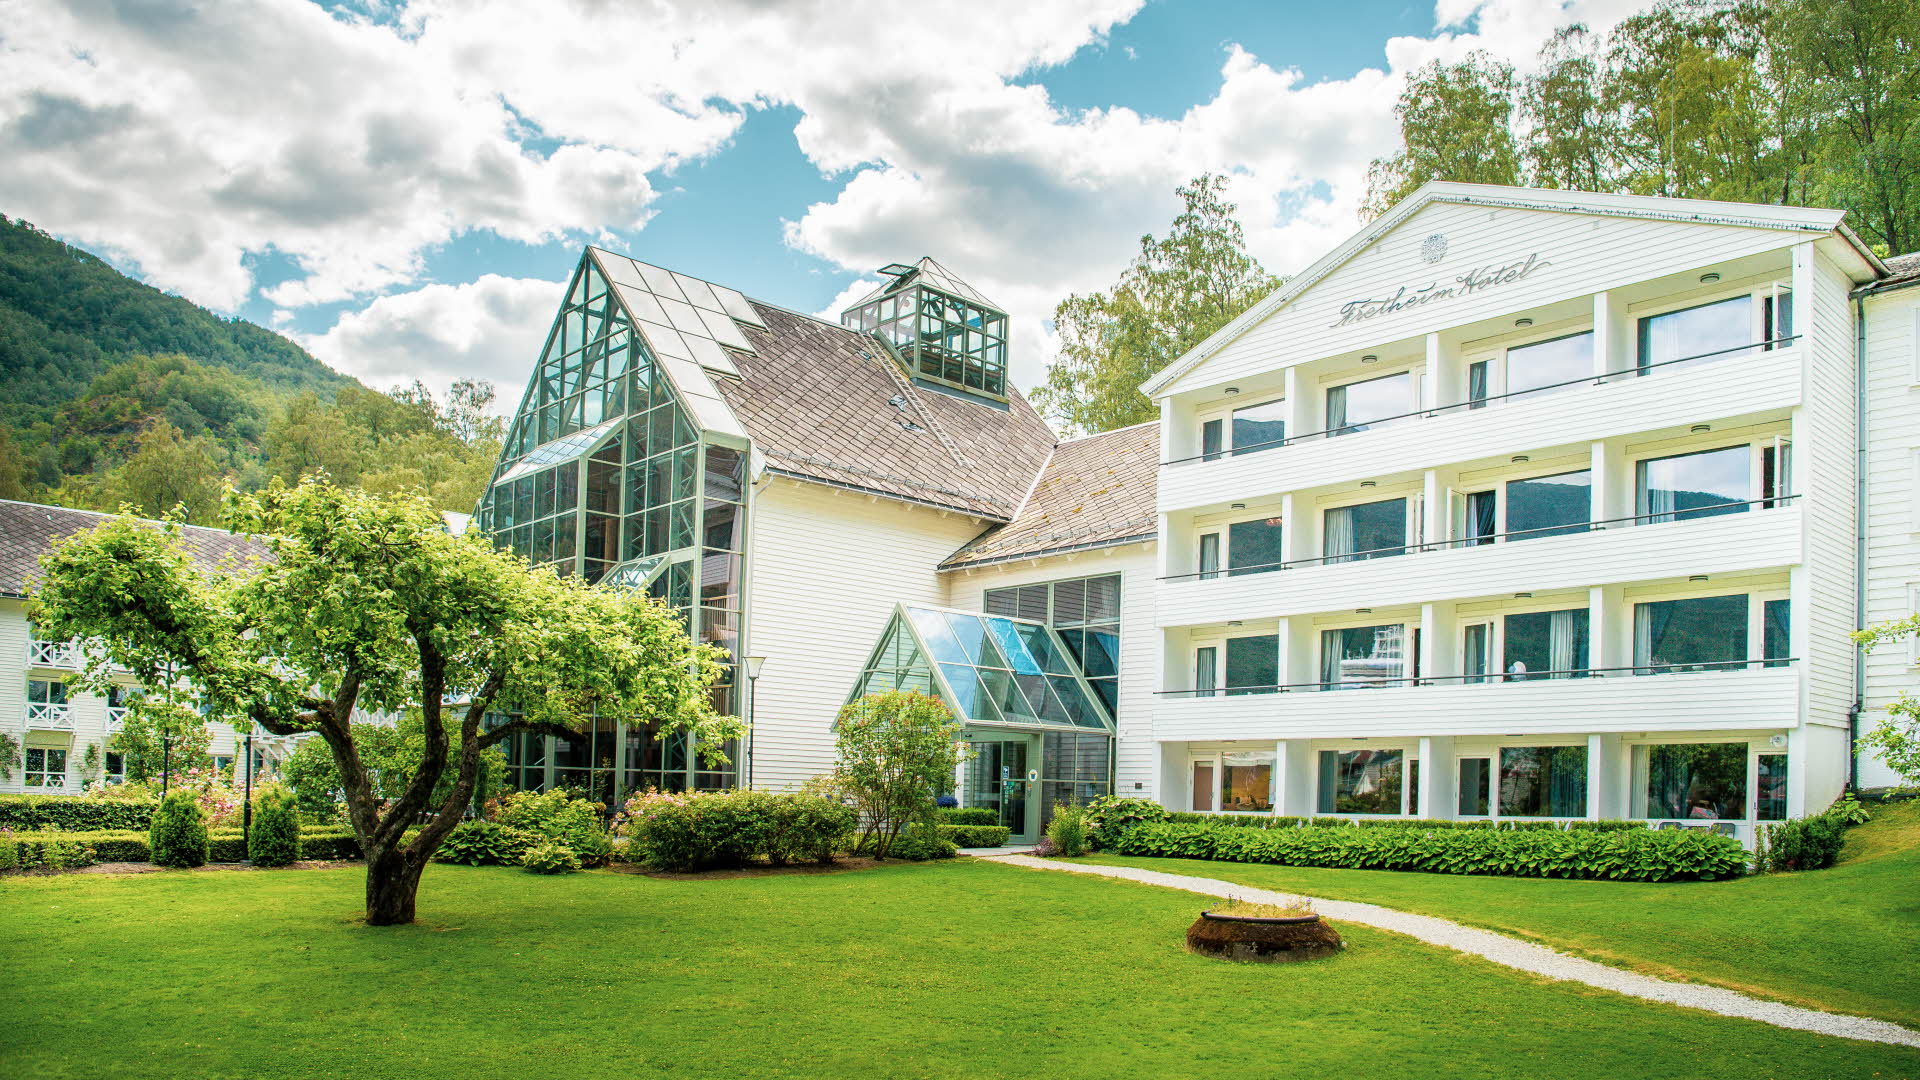 Außenansicht des Hotels Fretheim in Flåm mit grünen Bäumen, blühenden Büschen und gepflegtem Rasen